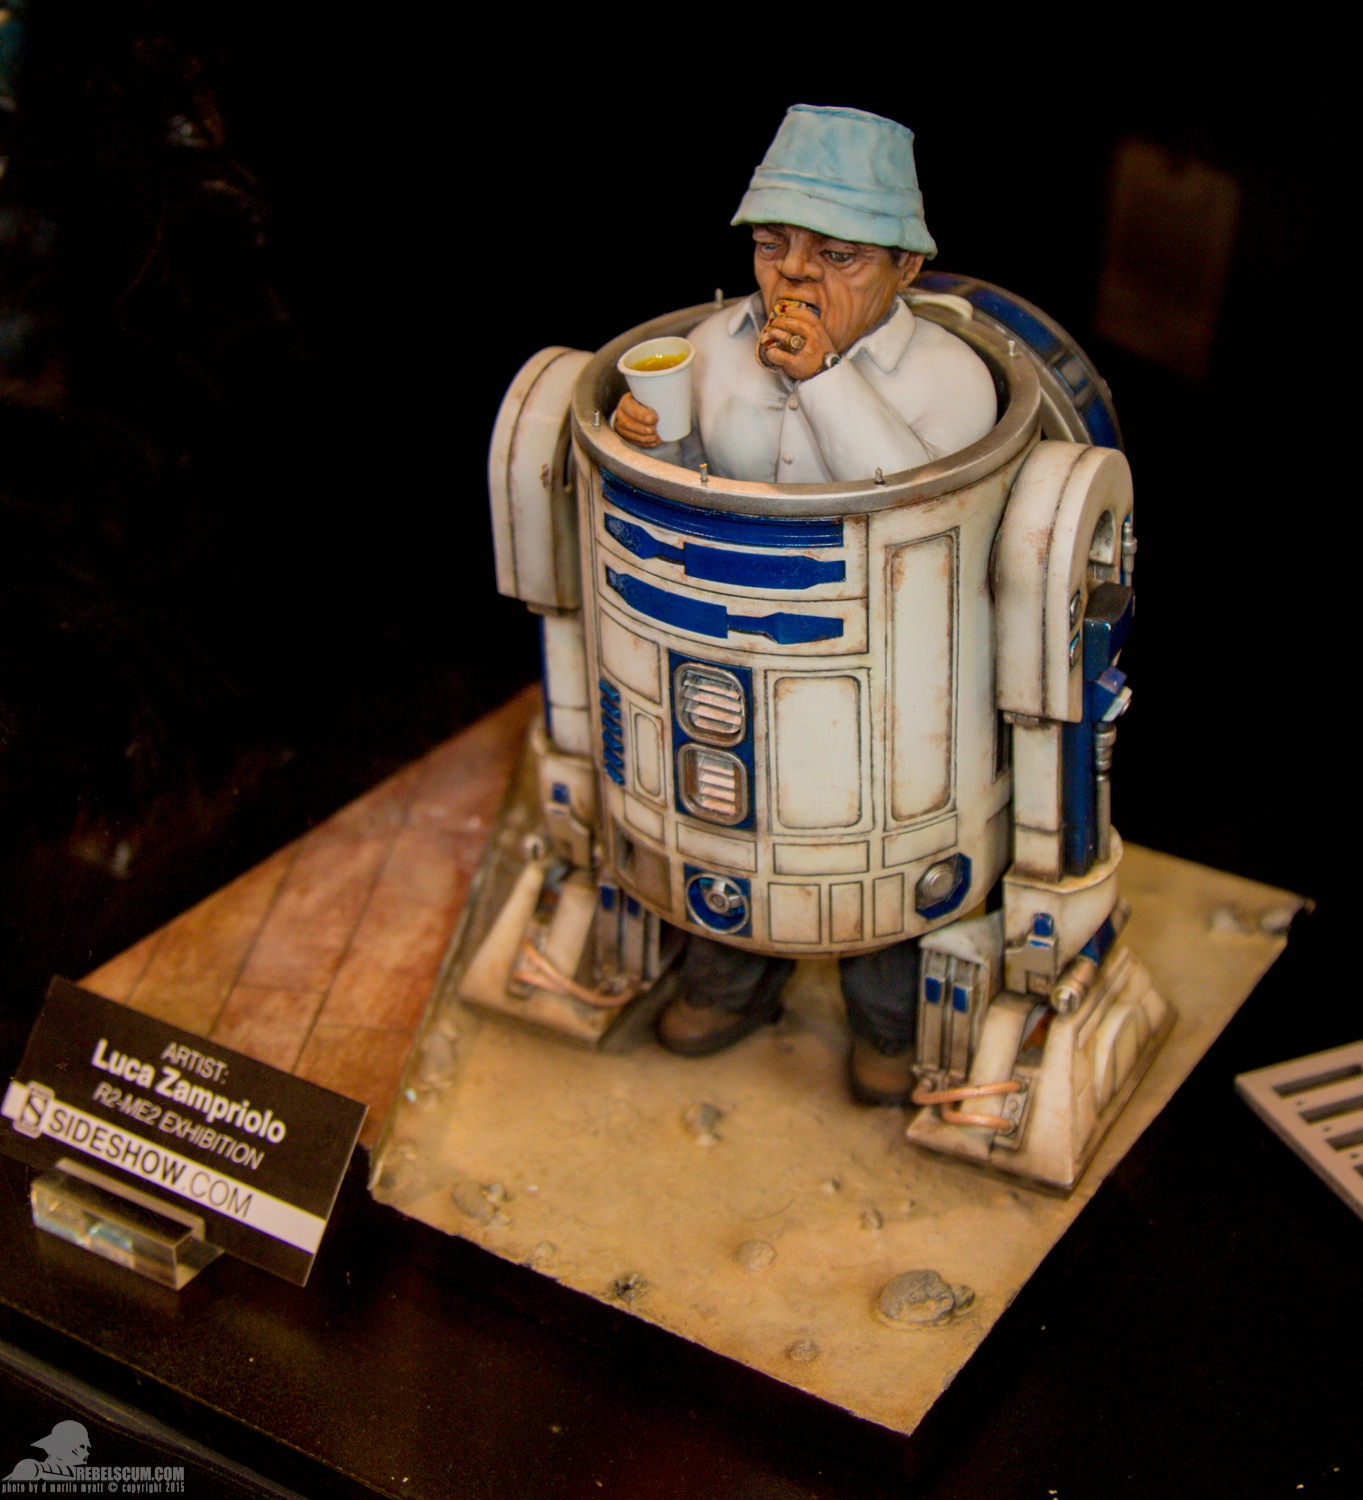 Star-Wars-Celebration-Anaheim-2015-Sideshow-R2-Me2-Exhibit-039.jpg